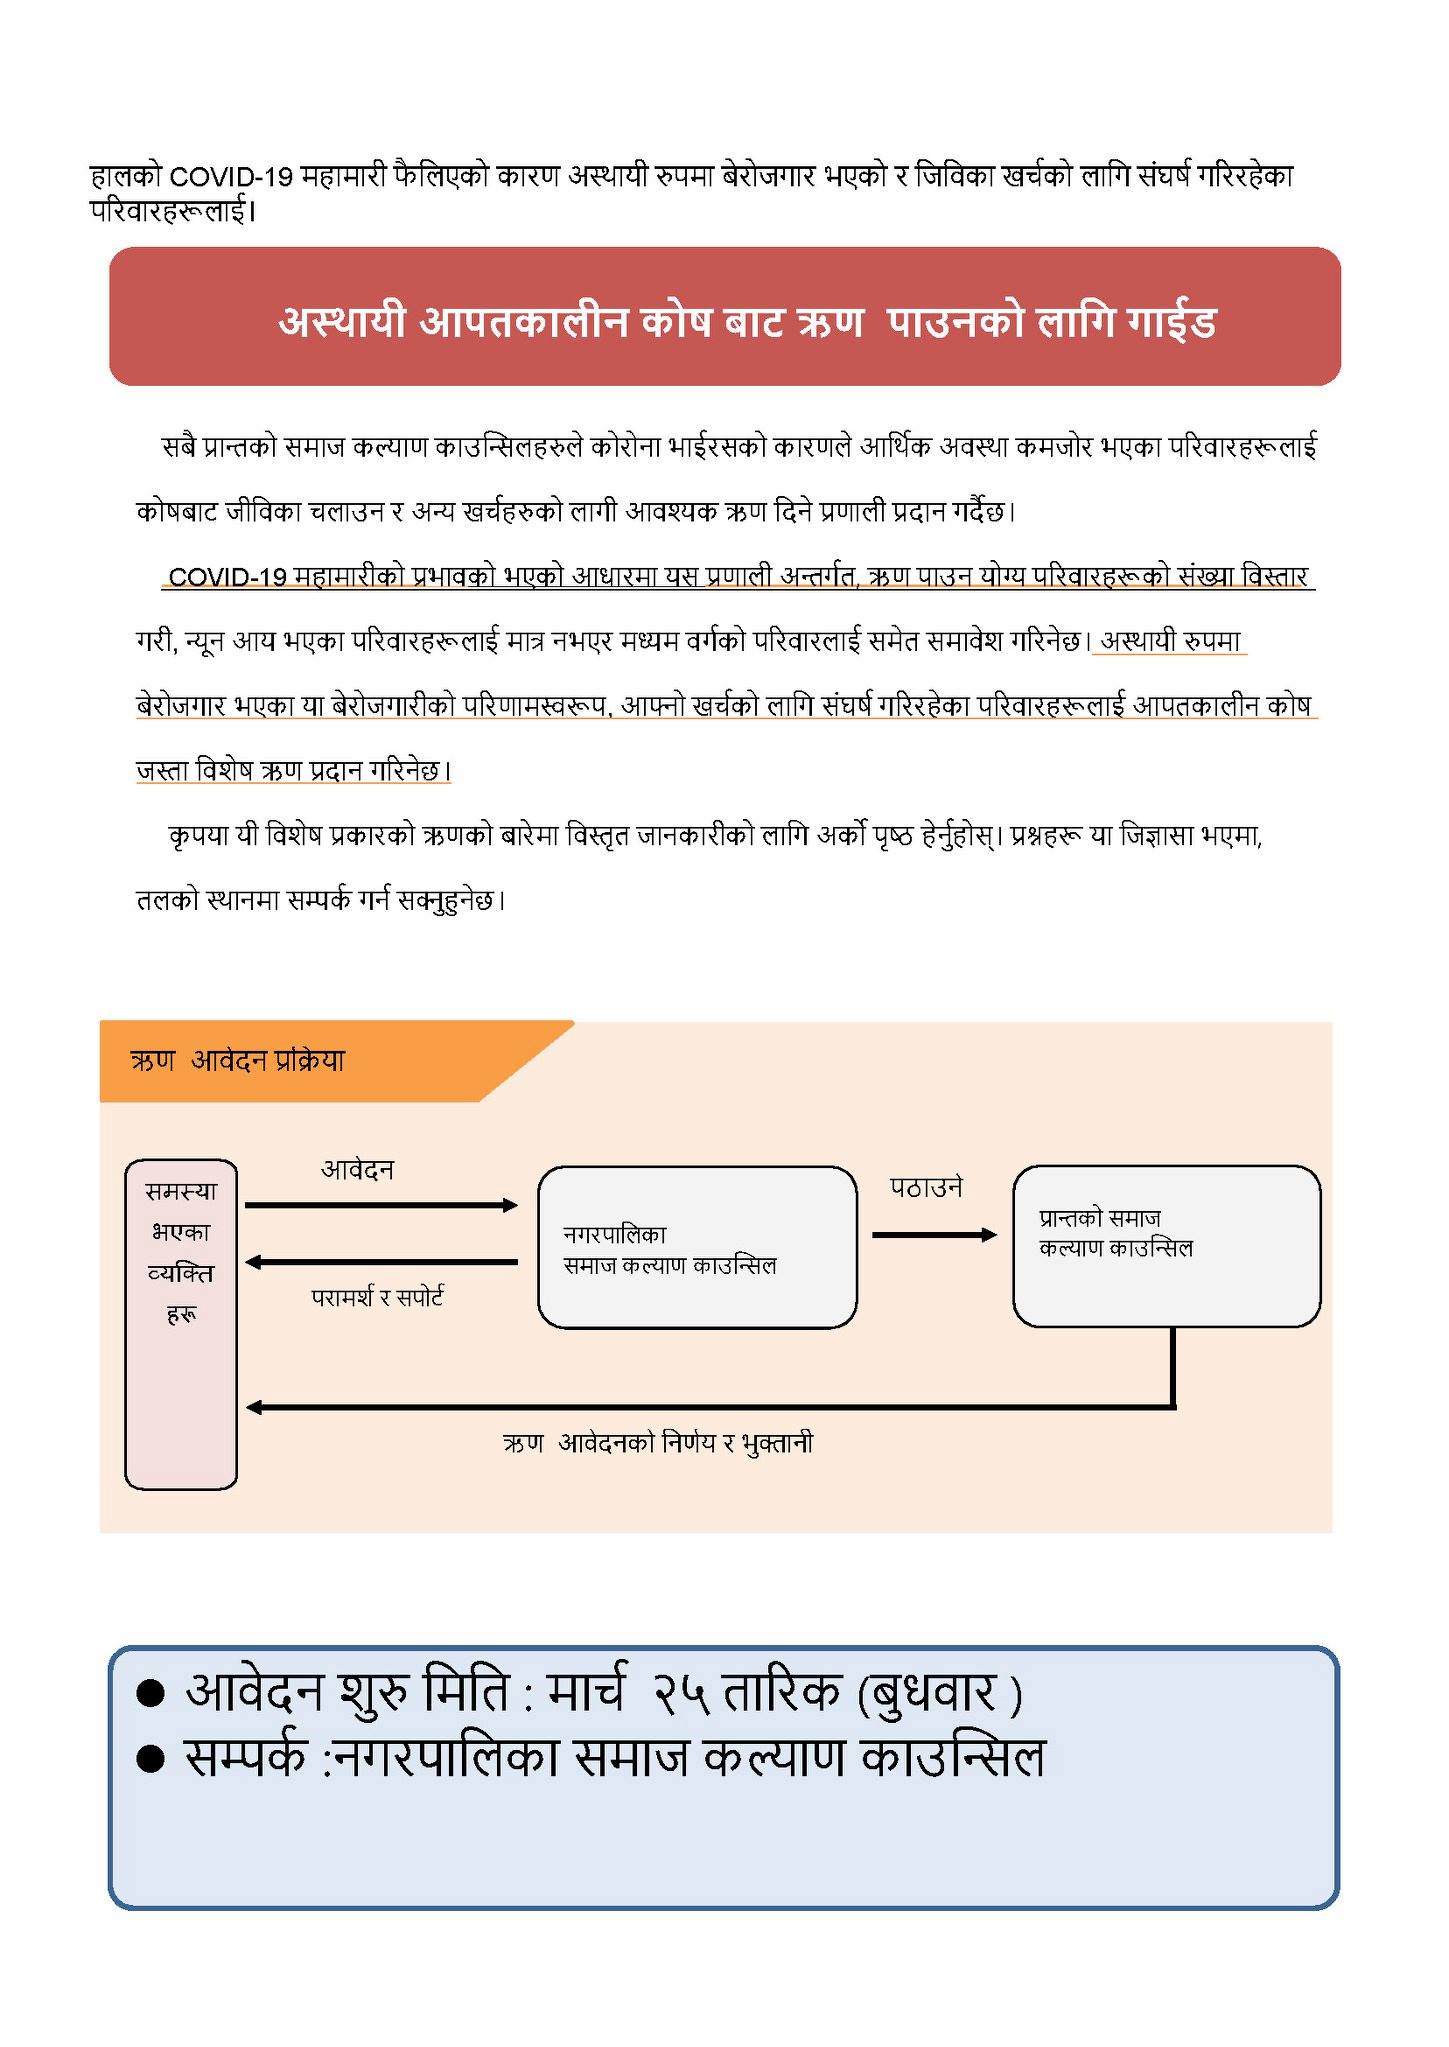 緊急小口融資のネパール語翻訳資料